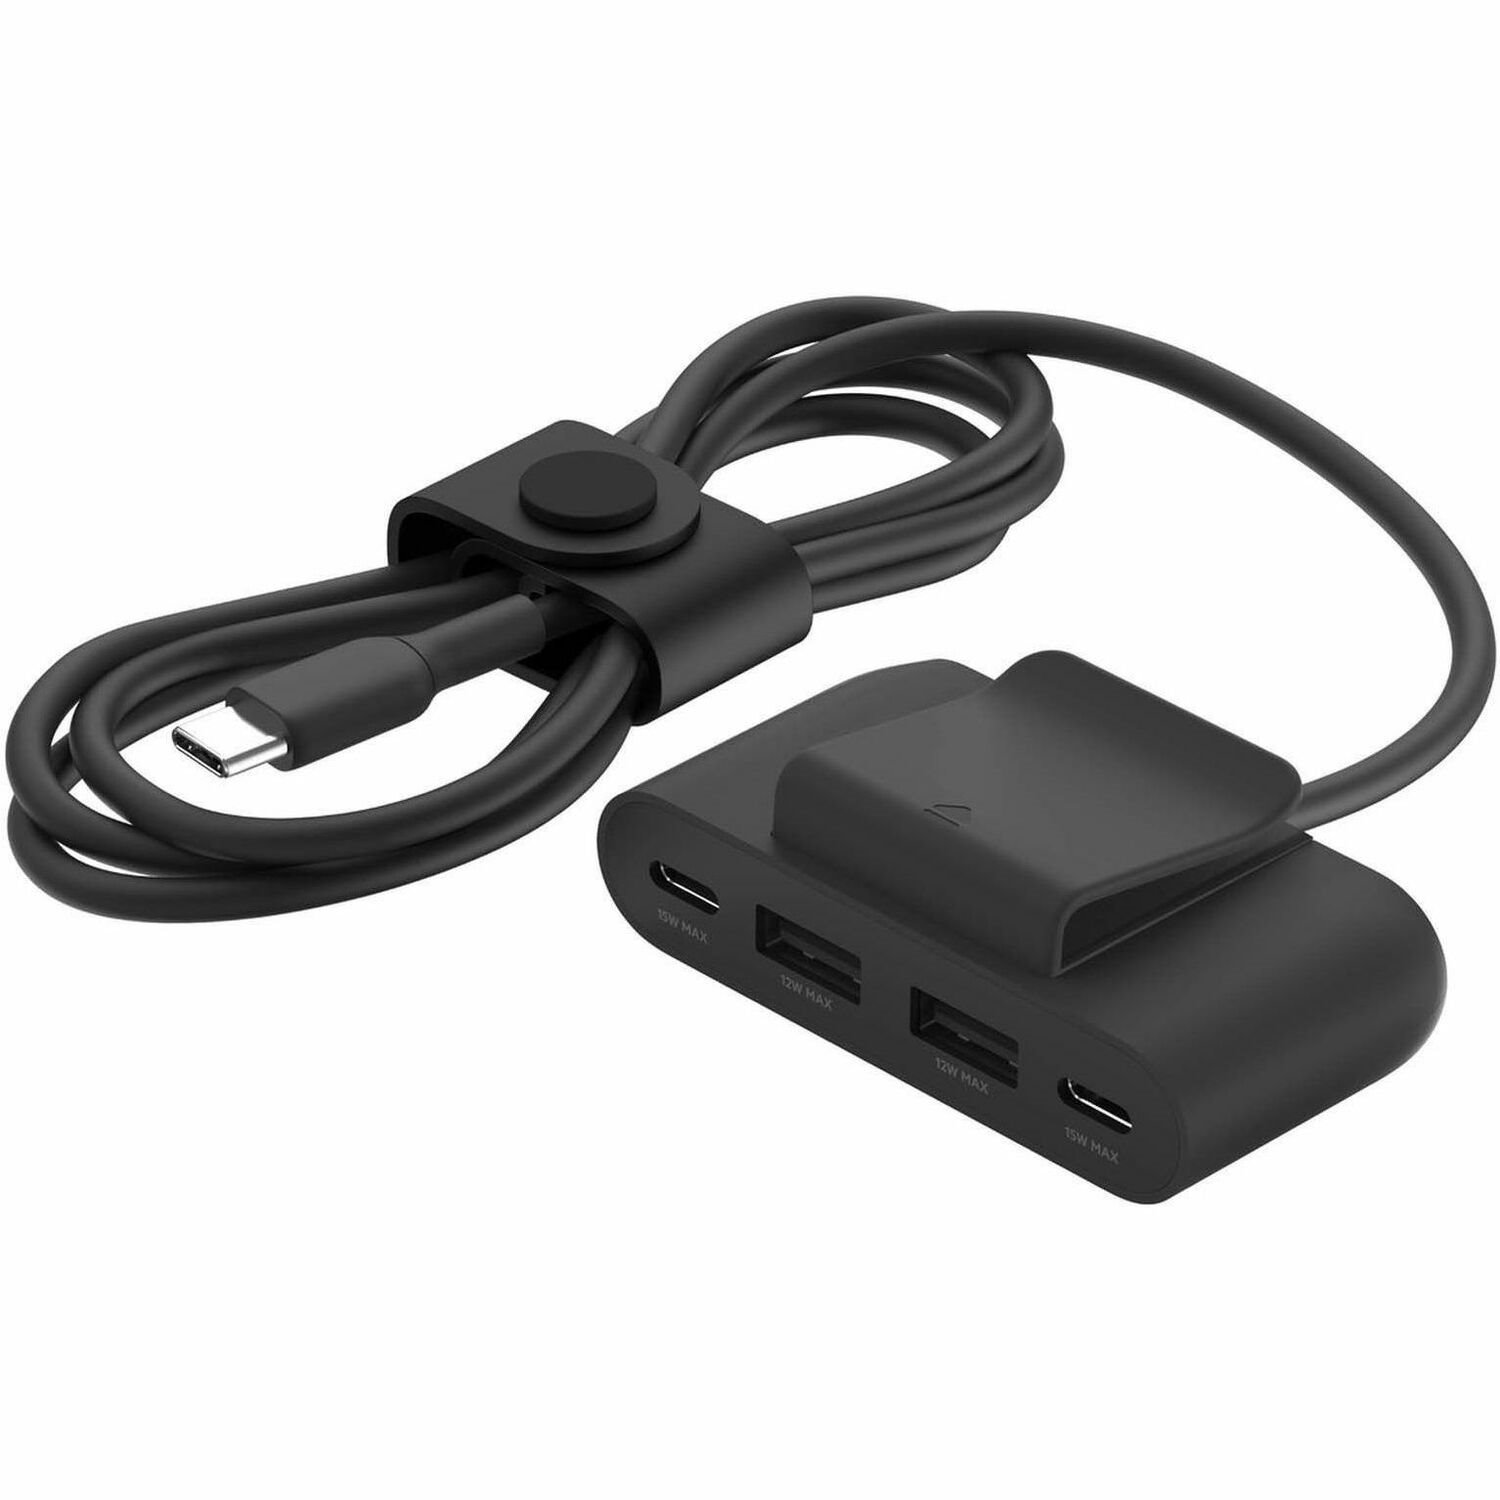 Belkin BoostCharge USB Extender - Black